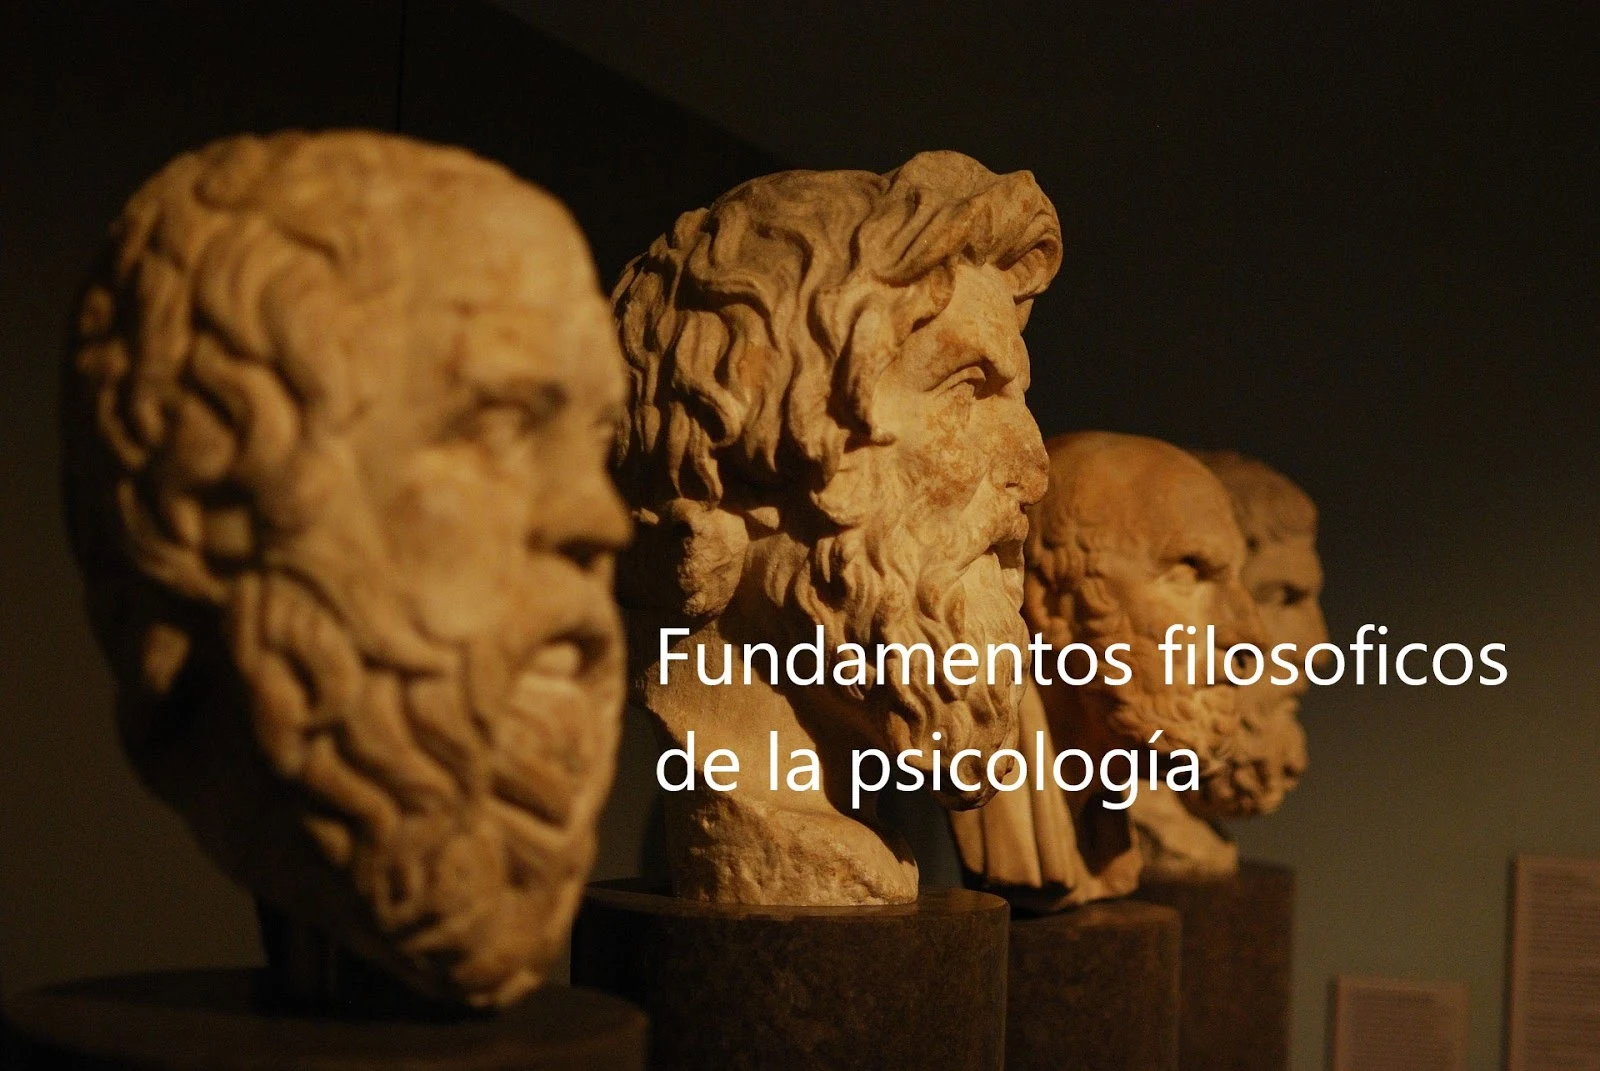 [PDF] Fundamentos filosóficos de la Psicología, Arturo Silva.